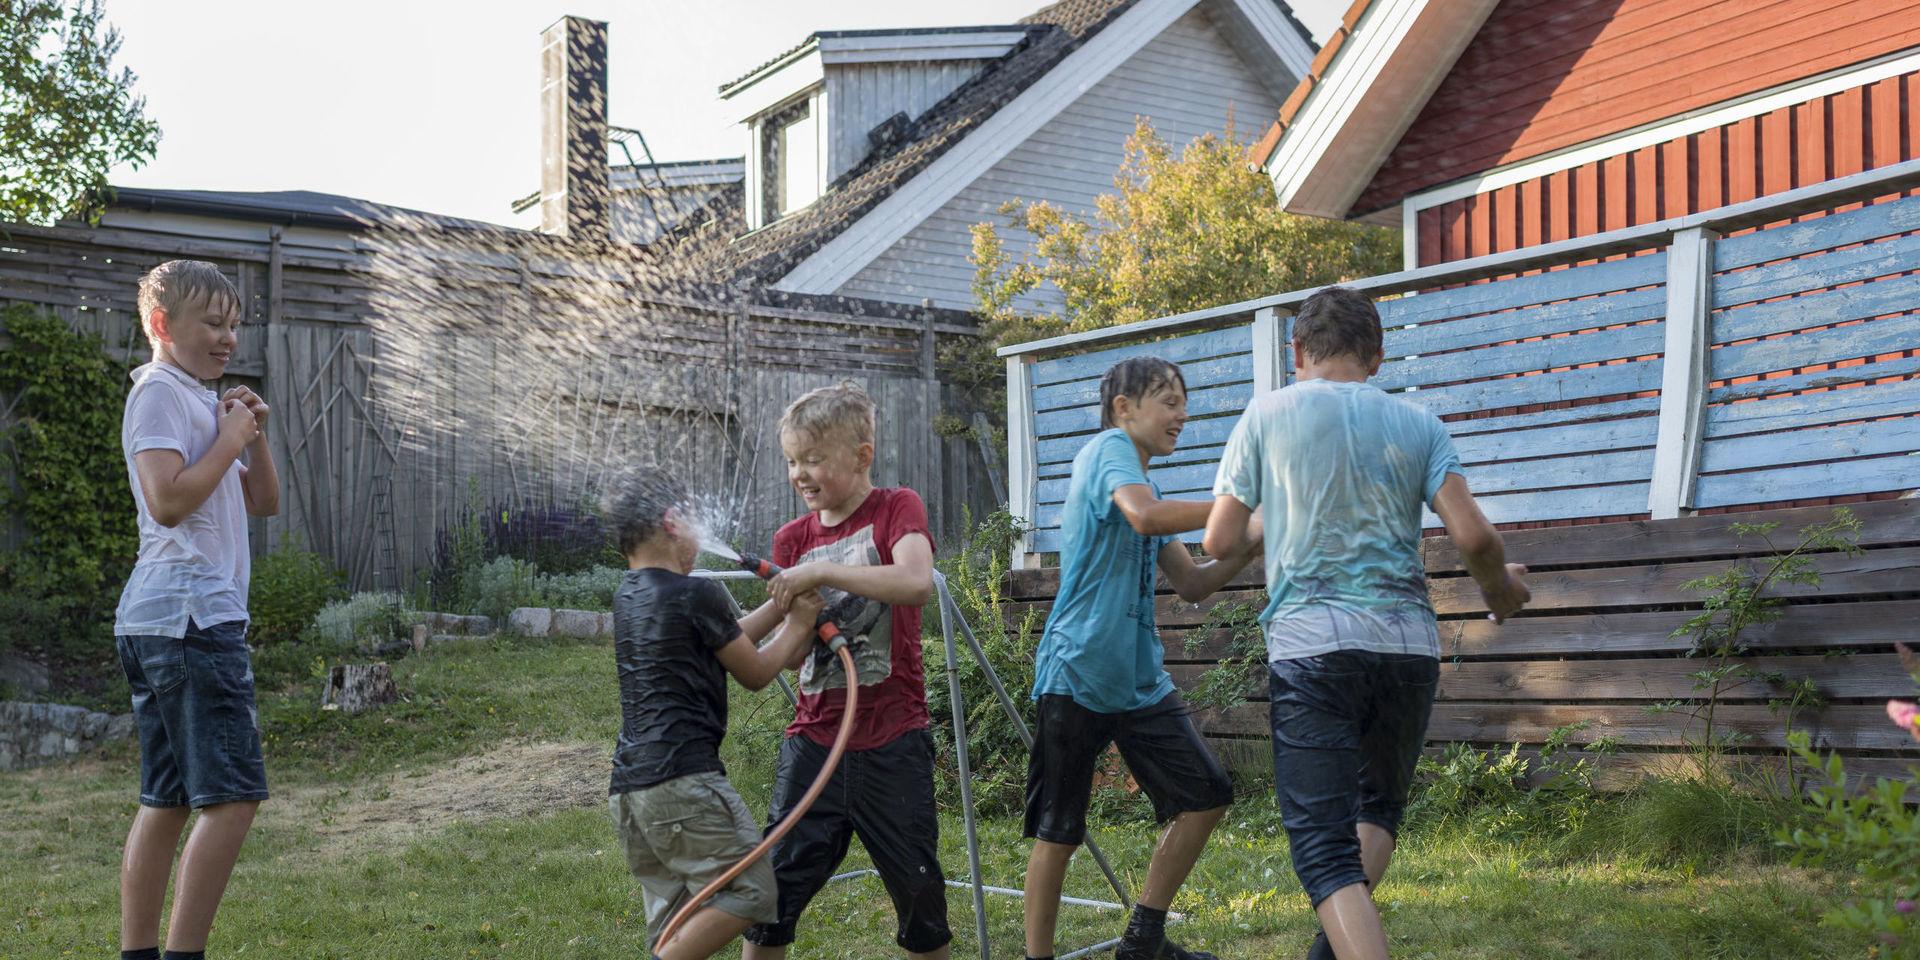 20180627 - barn leker med vattenslang på gräsmatta i trädgård
Foto: Henrik Holmberg / TT / kod 96